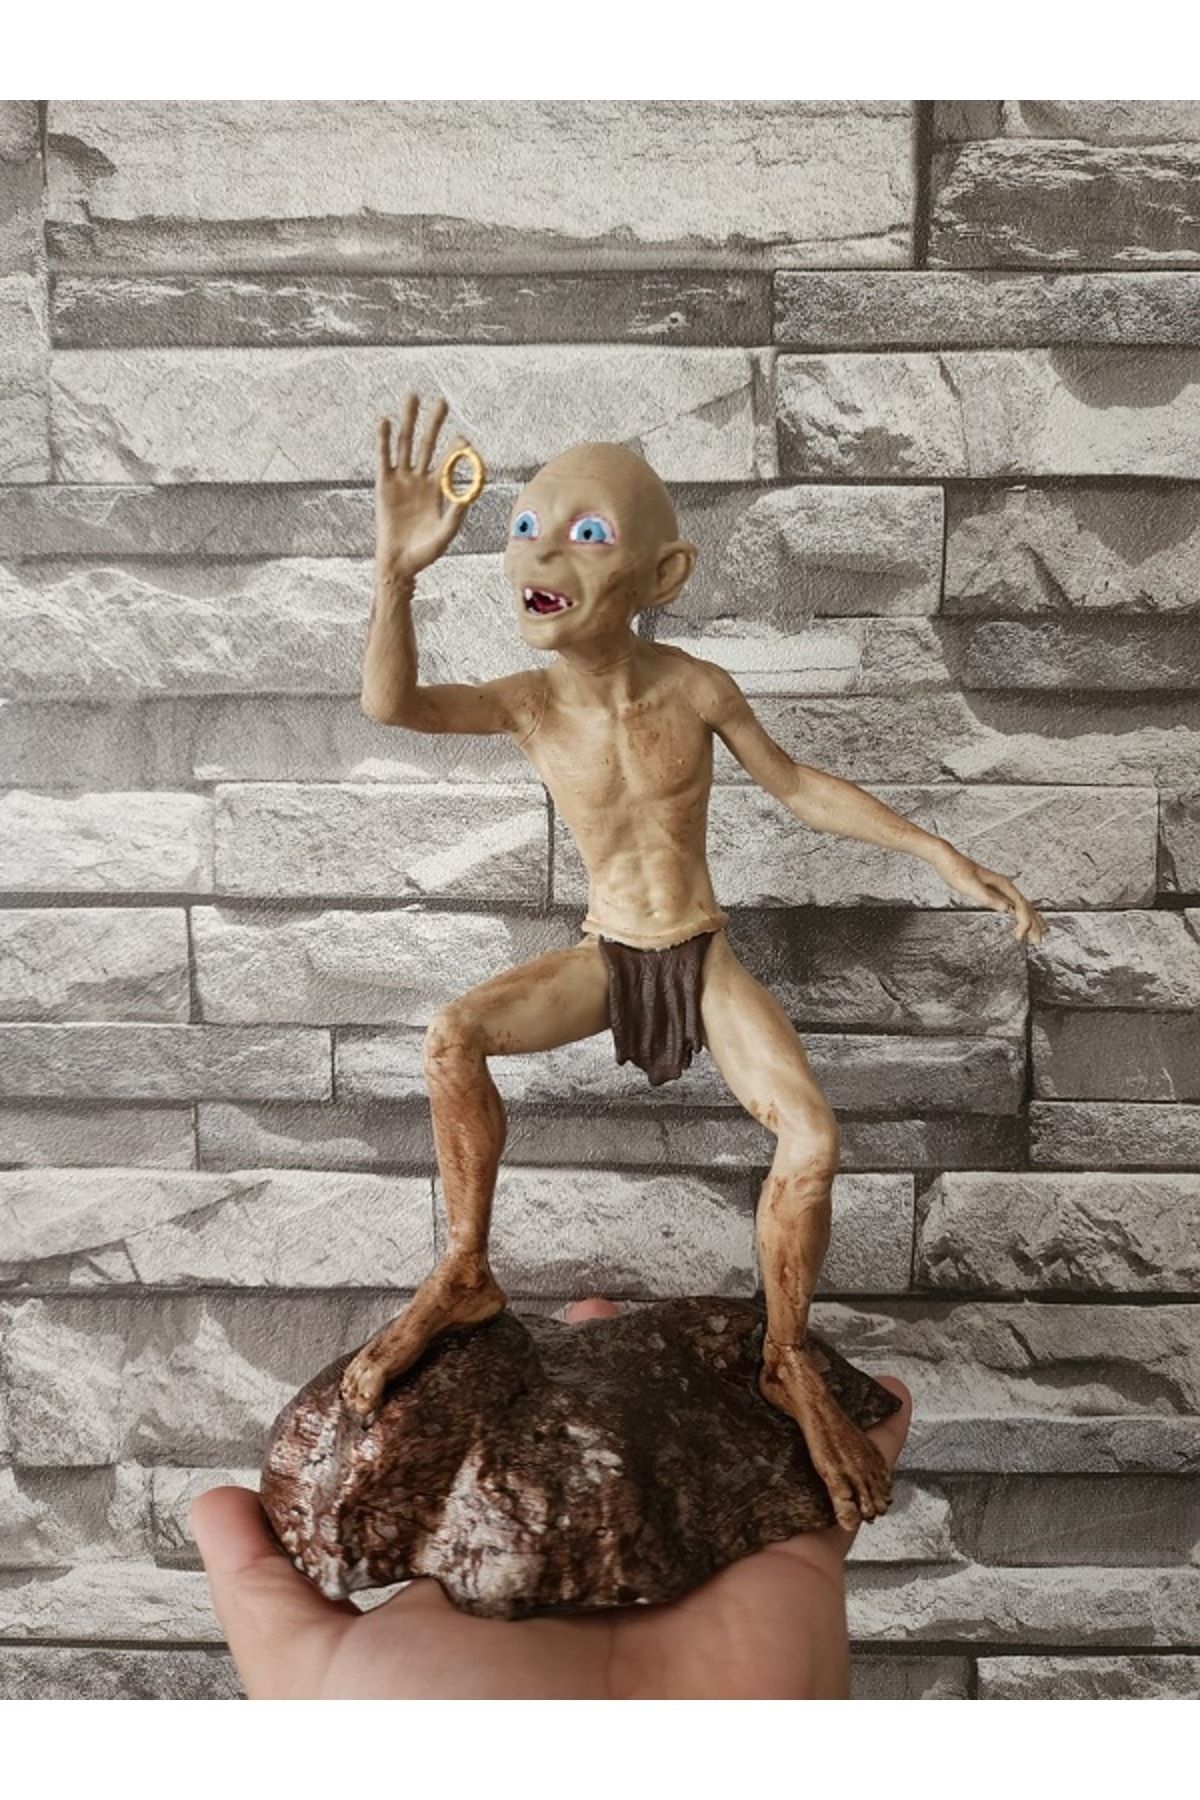 Ufuk Gollum Smeagol - Yüzüklerin Efendisi ( The Lord Of The Rings ) Büst / 3d Figür 23cm Boyut